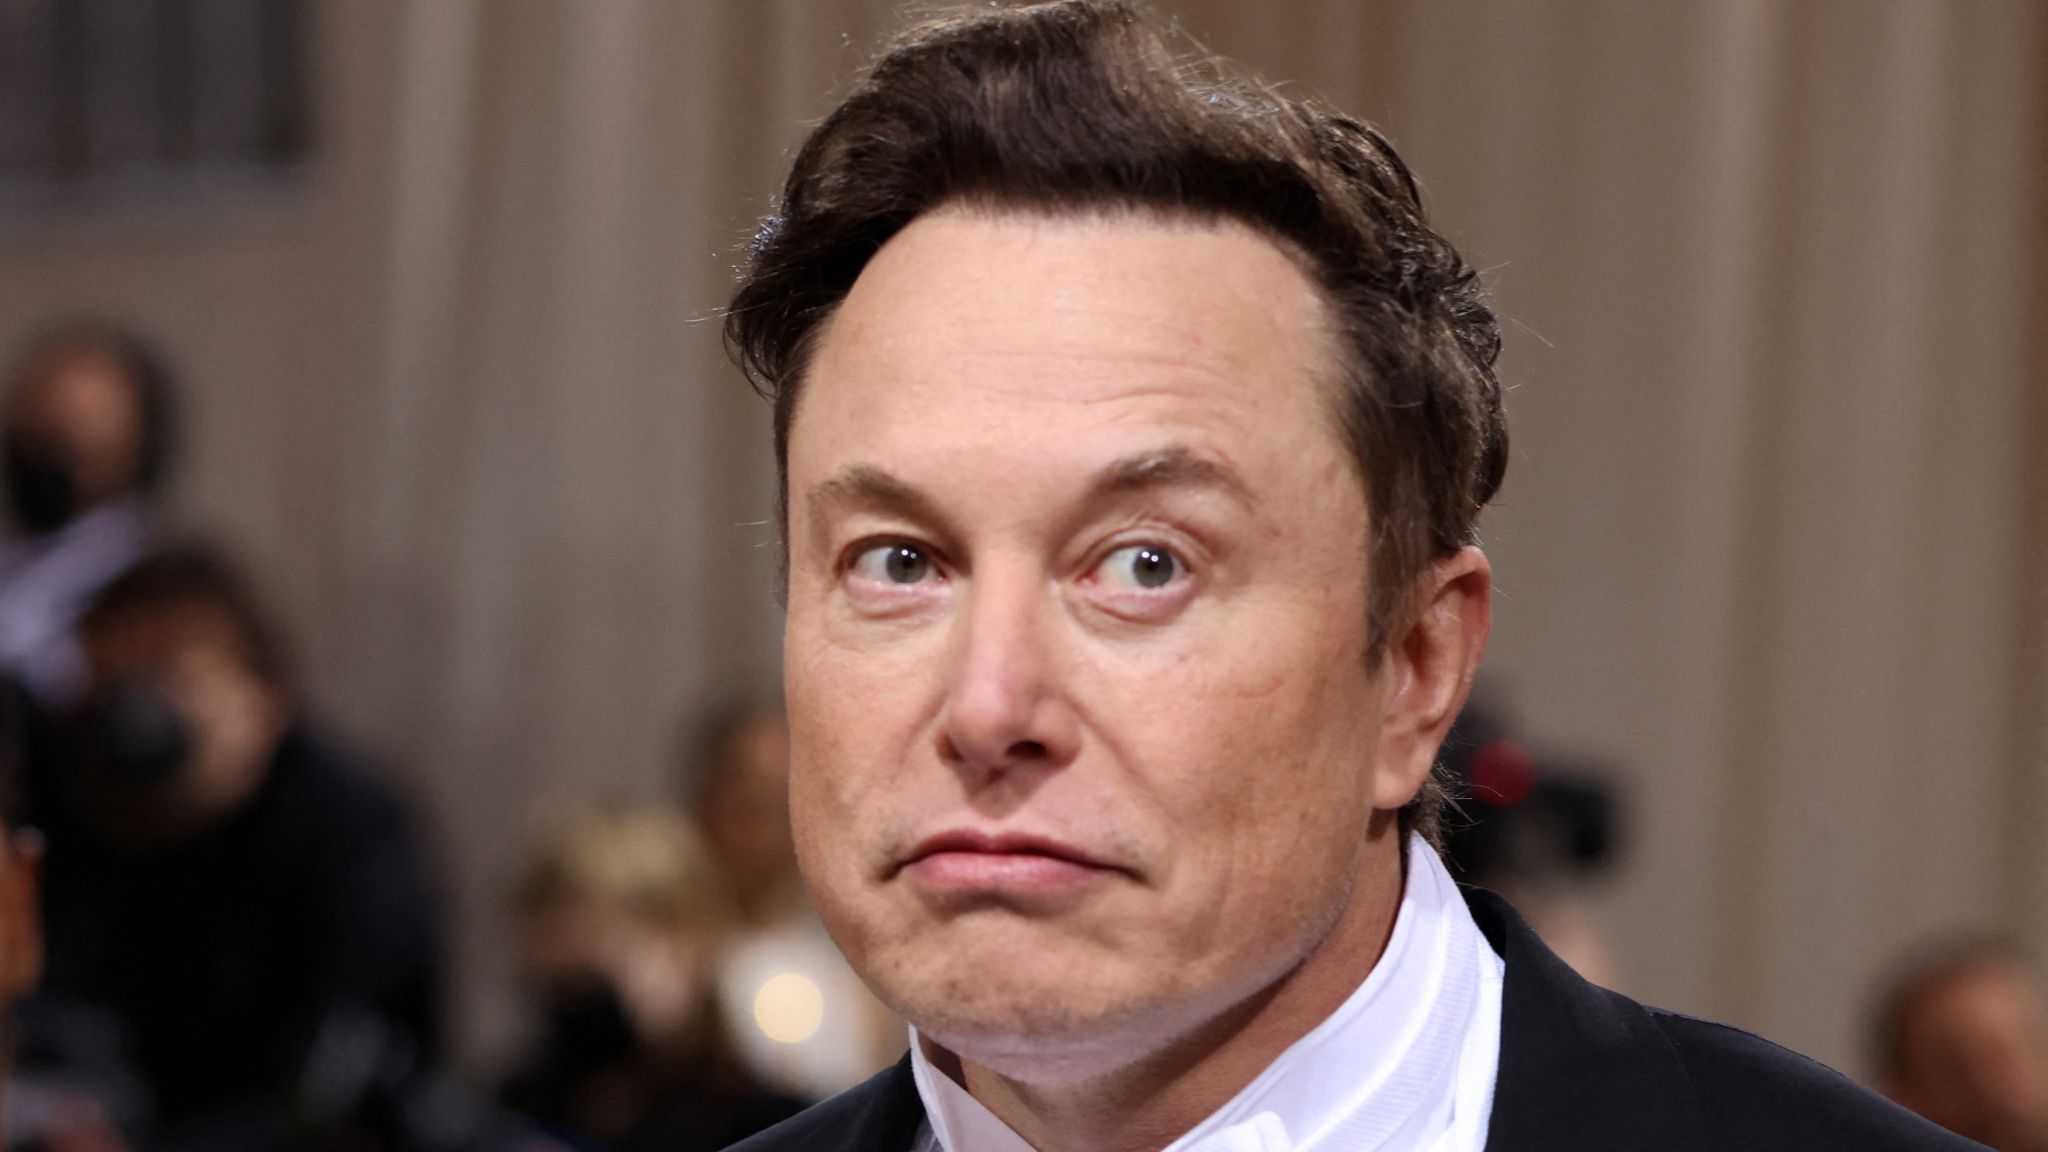 Elon Musk asks Twitter followers if he should bring back Vine | Science &  Tech News | Sky News